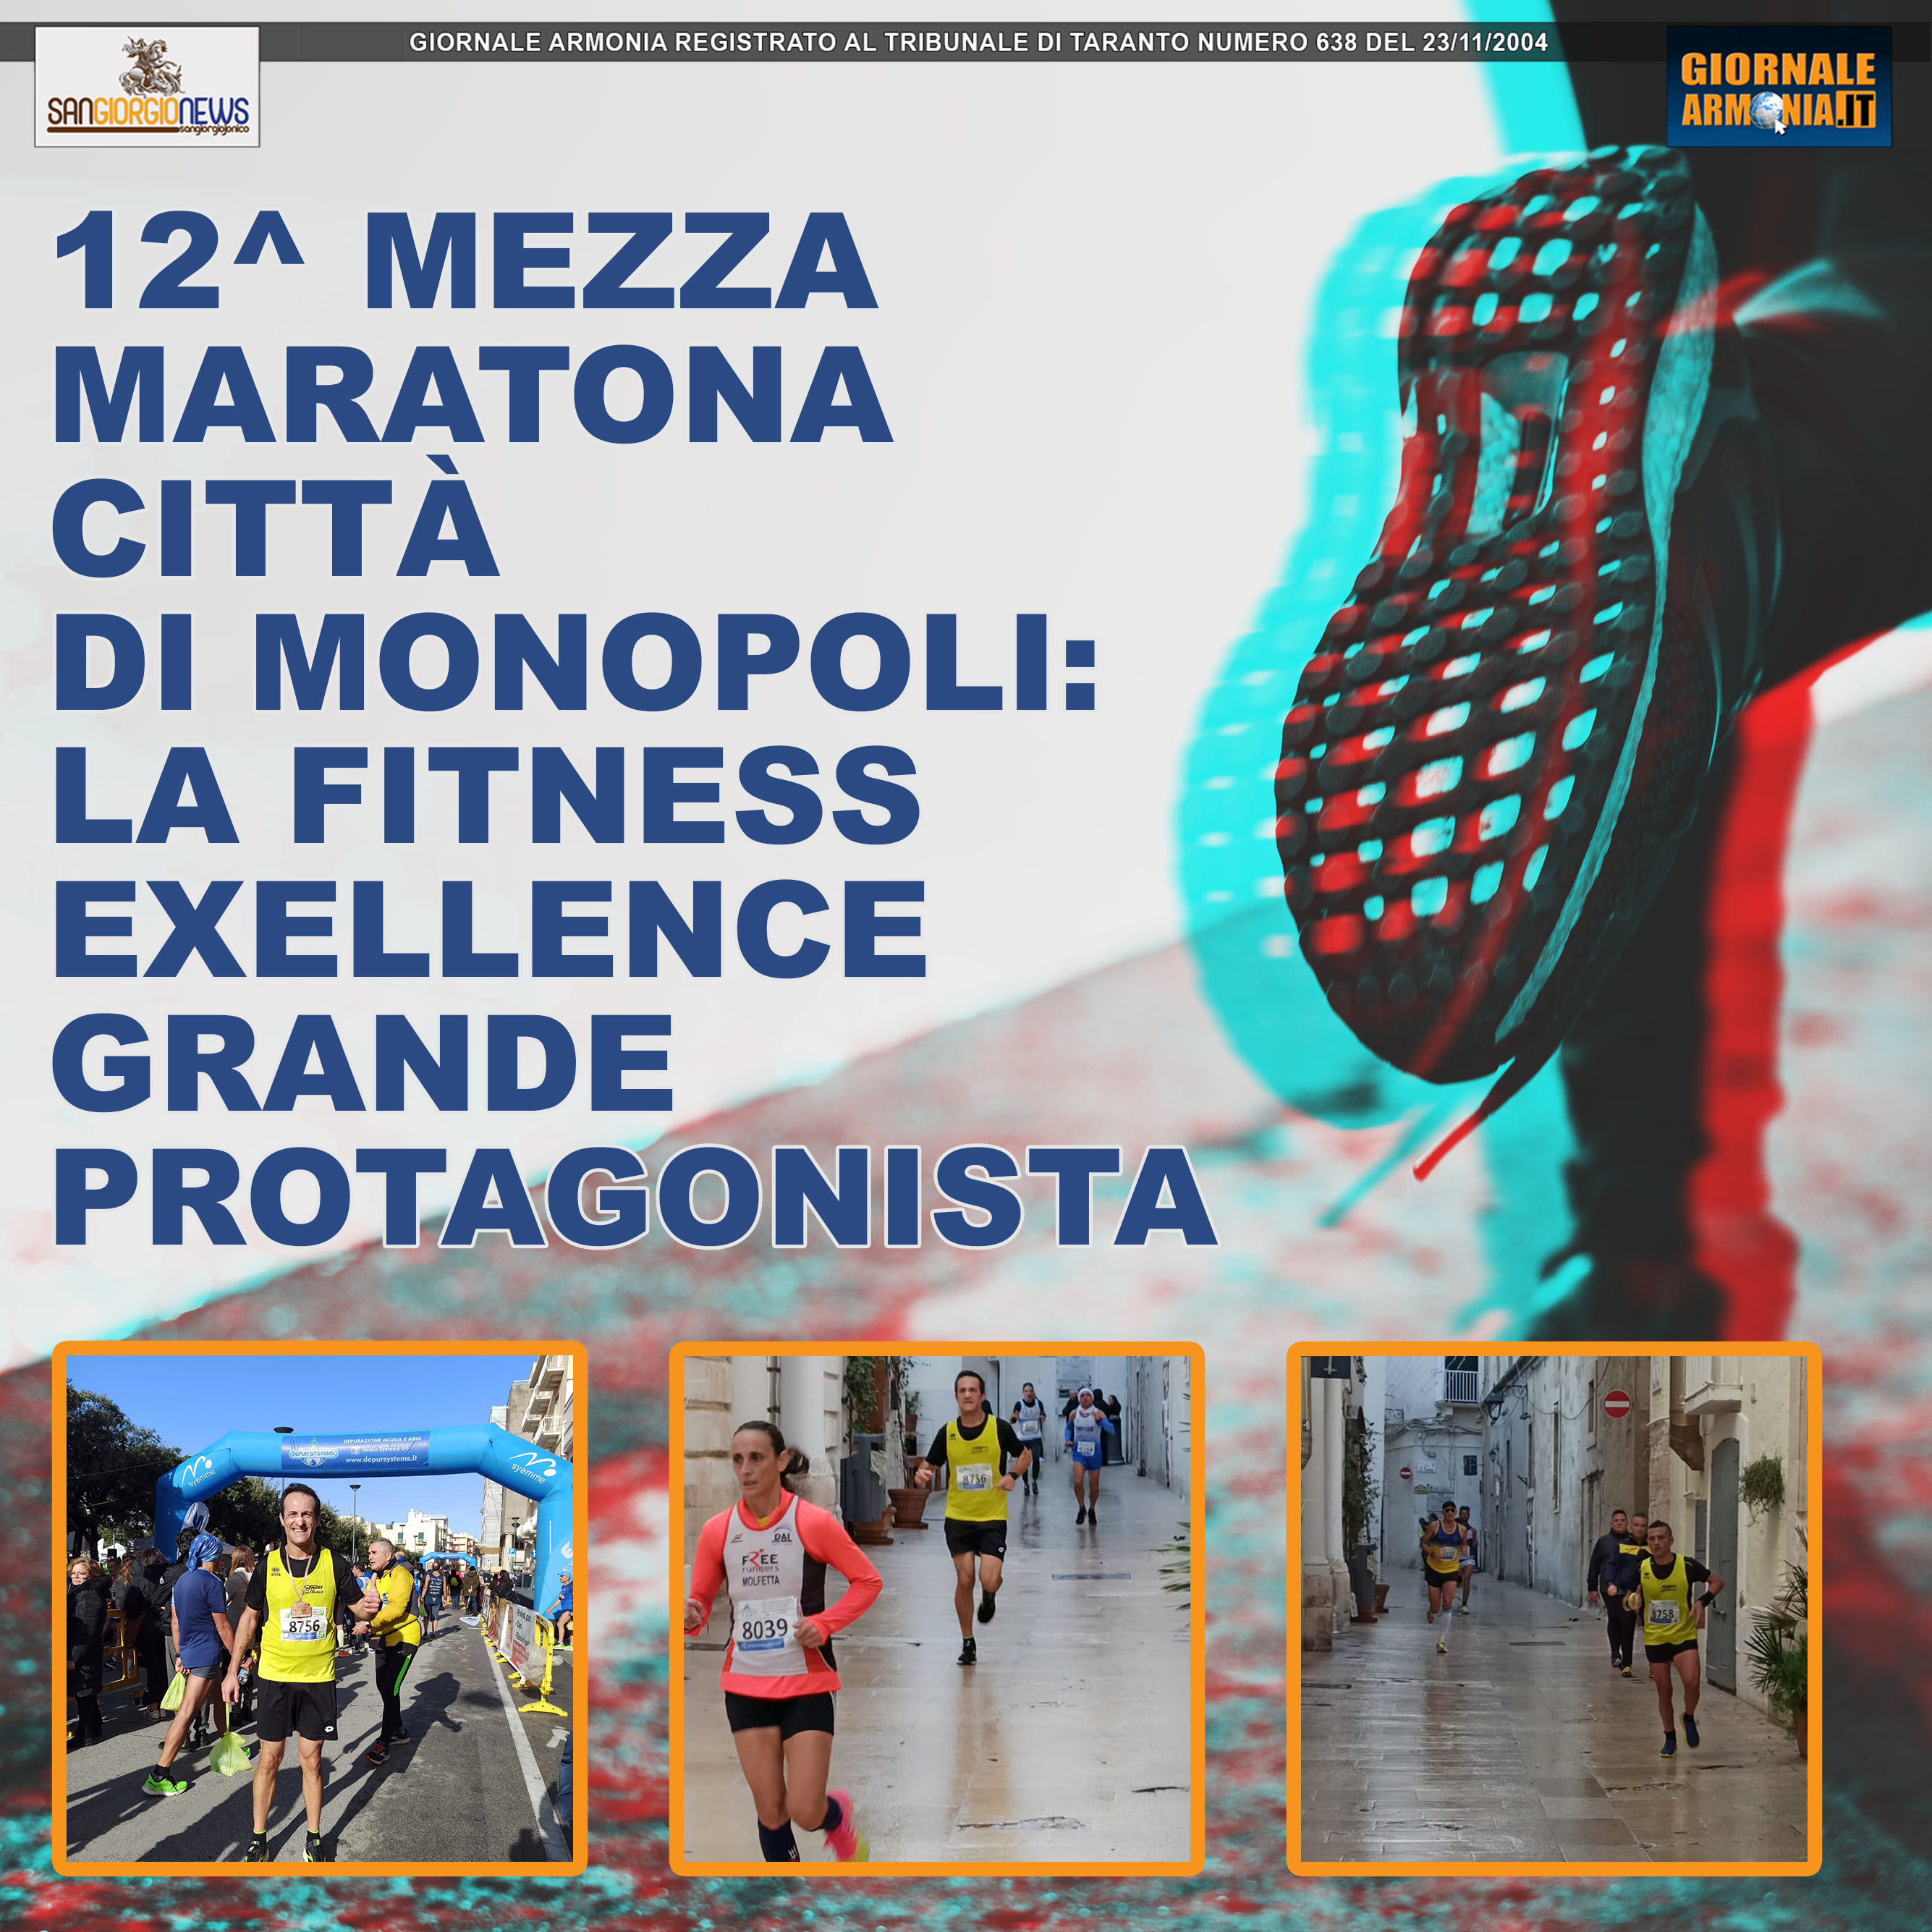 12^ MEZZA MARATONA CITTÀ DI MONOPOLI LA FITNESS EXELLENCE GRANDE PROTAGONISTA